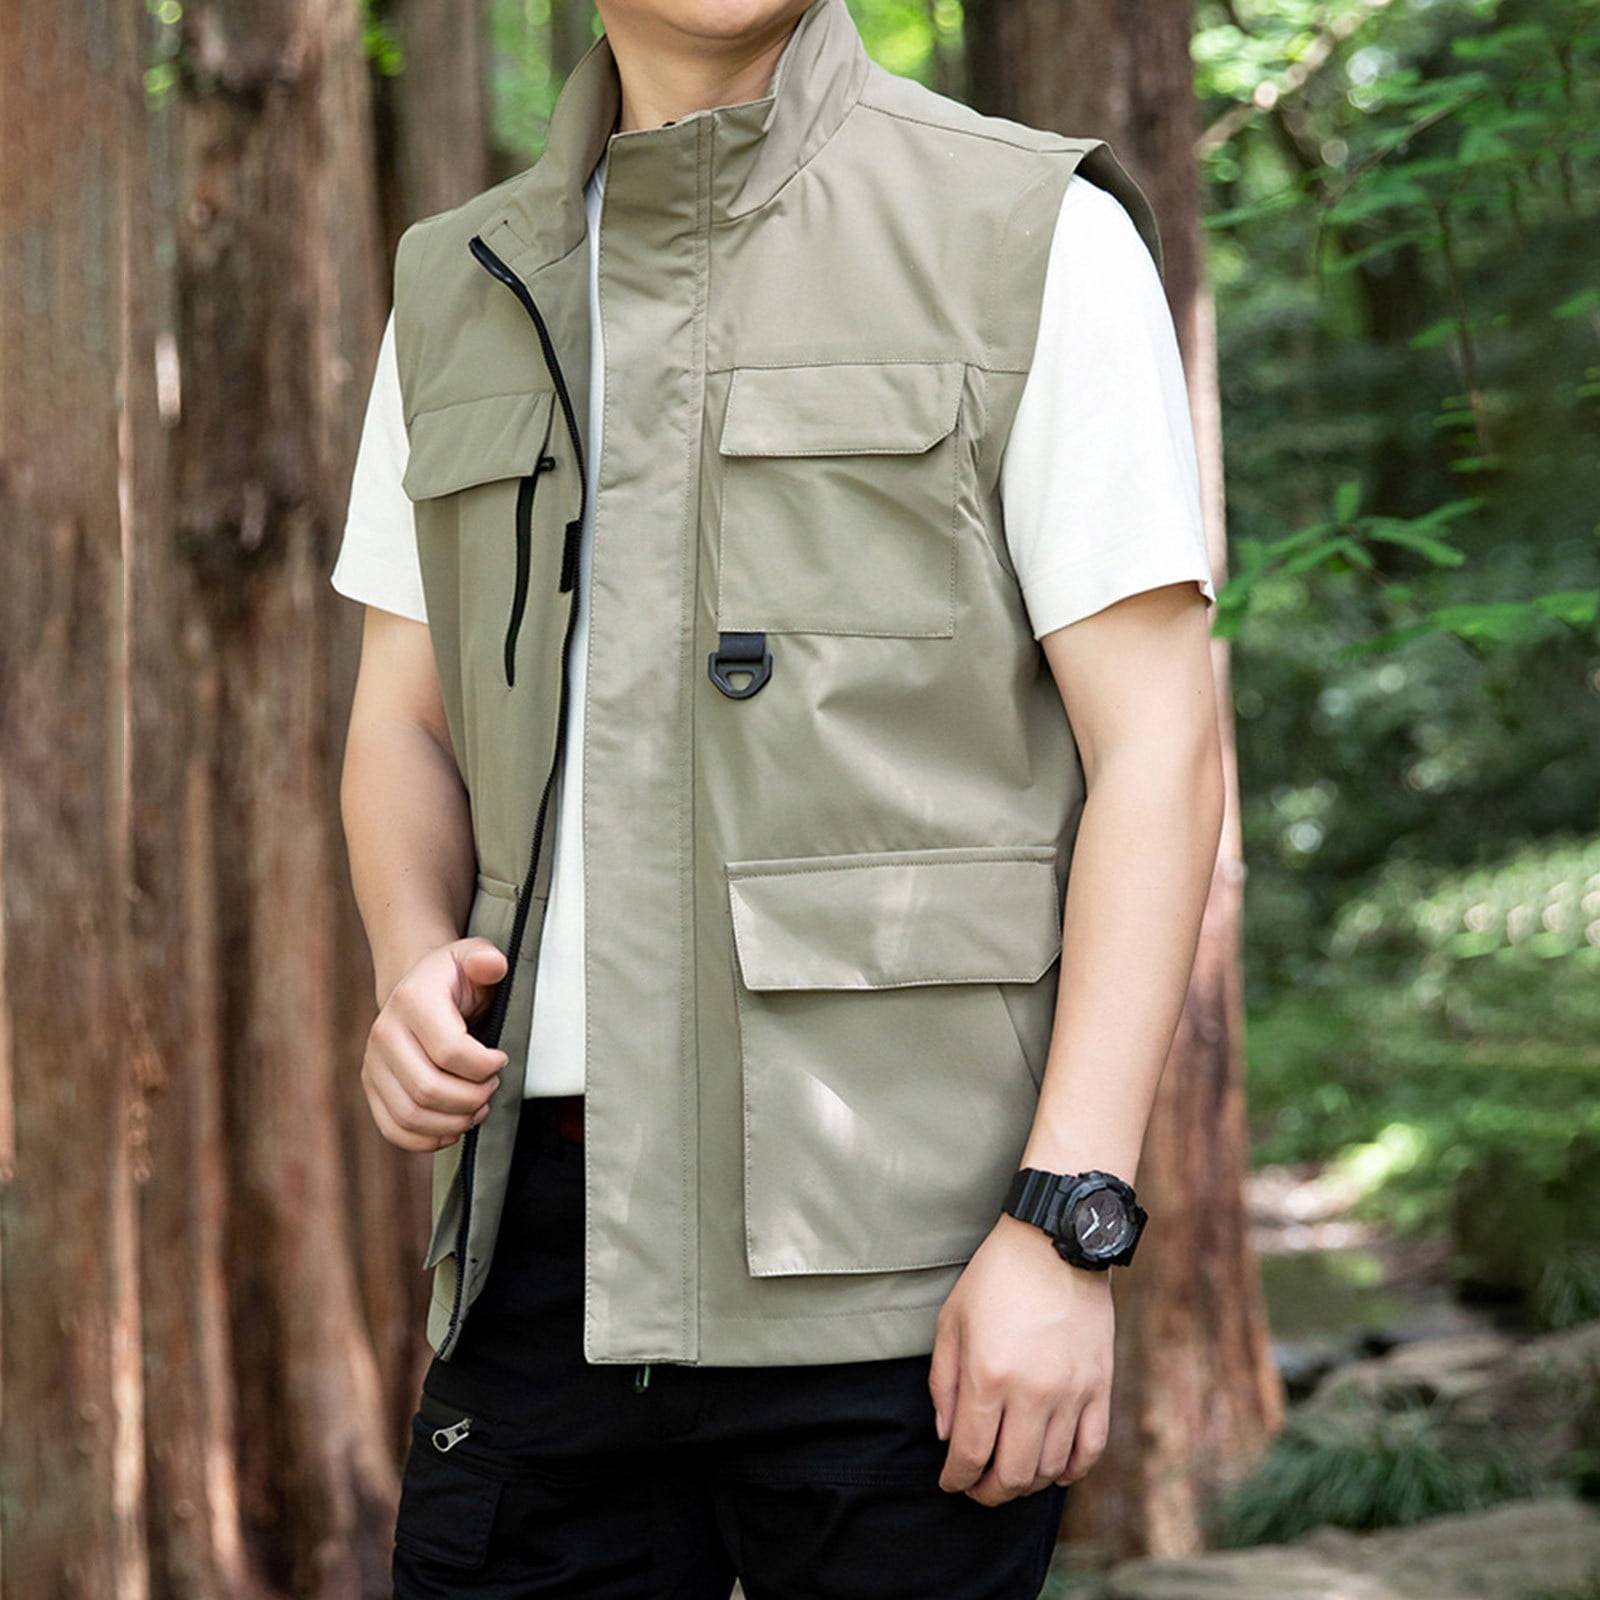 Virmaxy Men's Outdoor Travel Jacket Casual Fishing Photography  Multifunctional Vest Quick Dry Lightweight Zipper Vest